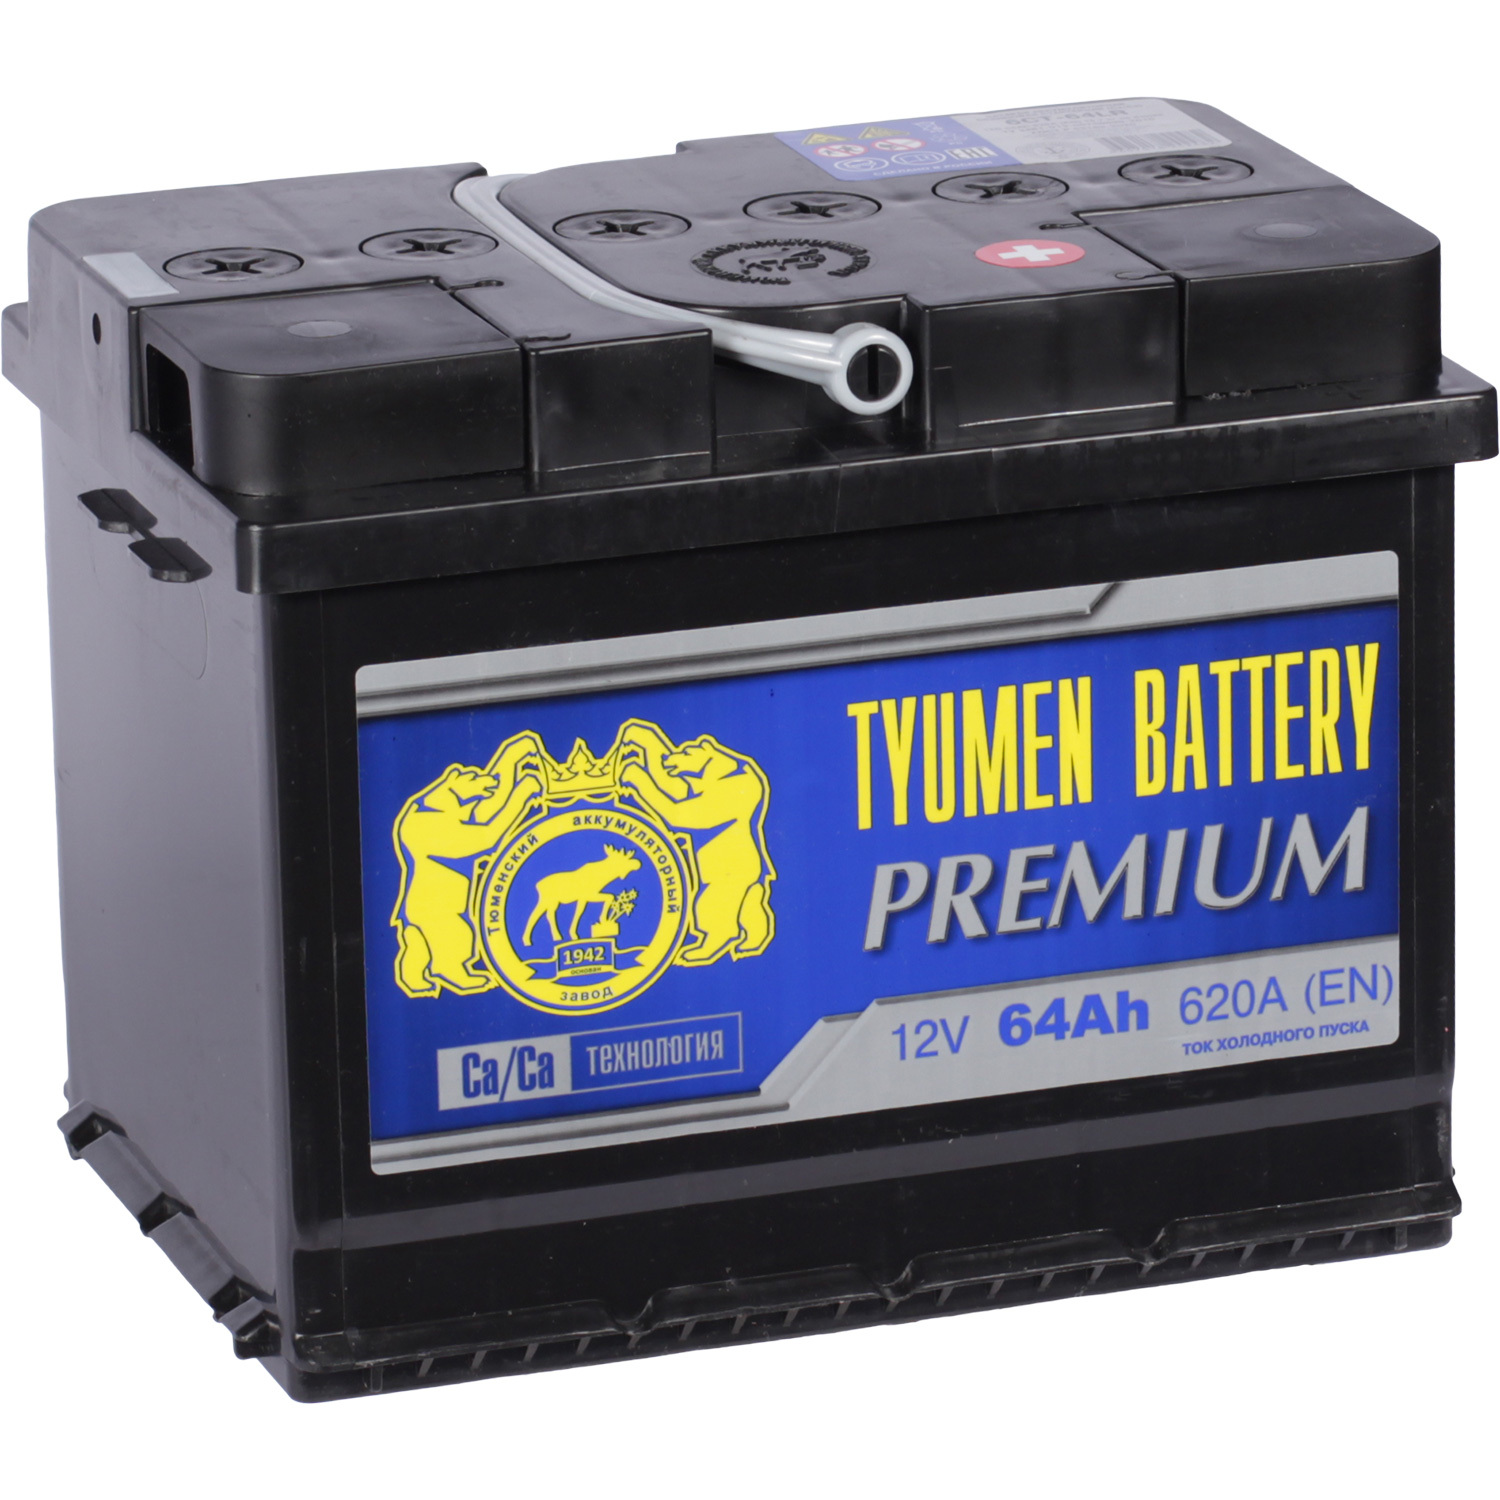 Tyumen Battery Автомобильный аккумулятор Tyumen Battery Premium 64 Ач обратная полярность L2 tyumen battery автомобильный аккумулятор tyumen battery standard 55 ач прямая полярность l2